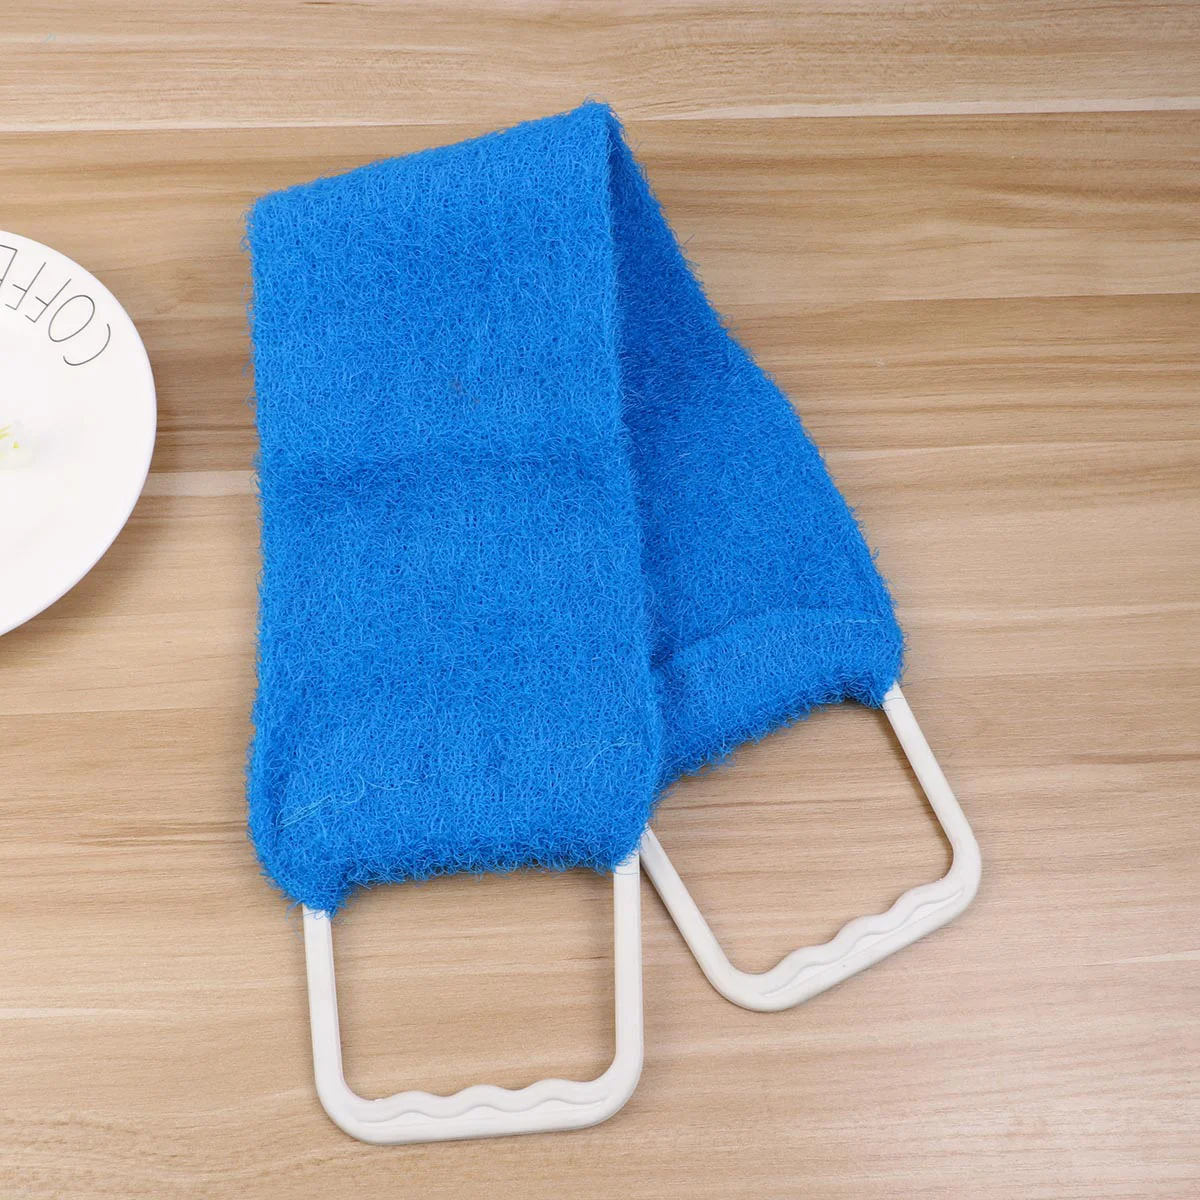 

Scrubbershower Body Bath Wash Exfoliating Towel Brush Men Washer Strip Clothsponge Scrubbing Rub Scrub Washcloth Clothes Cloths